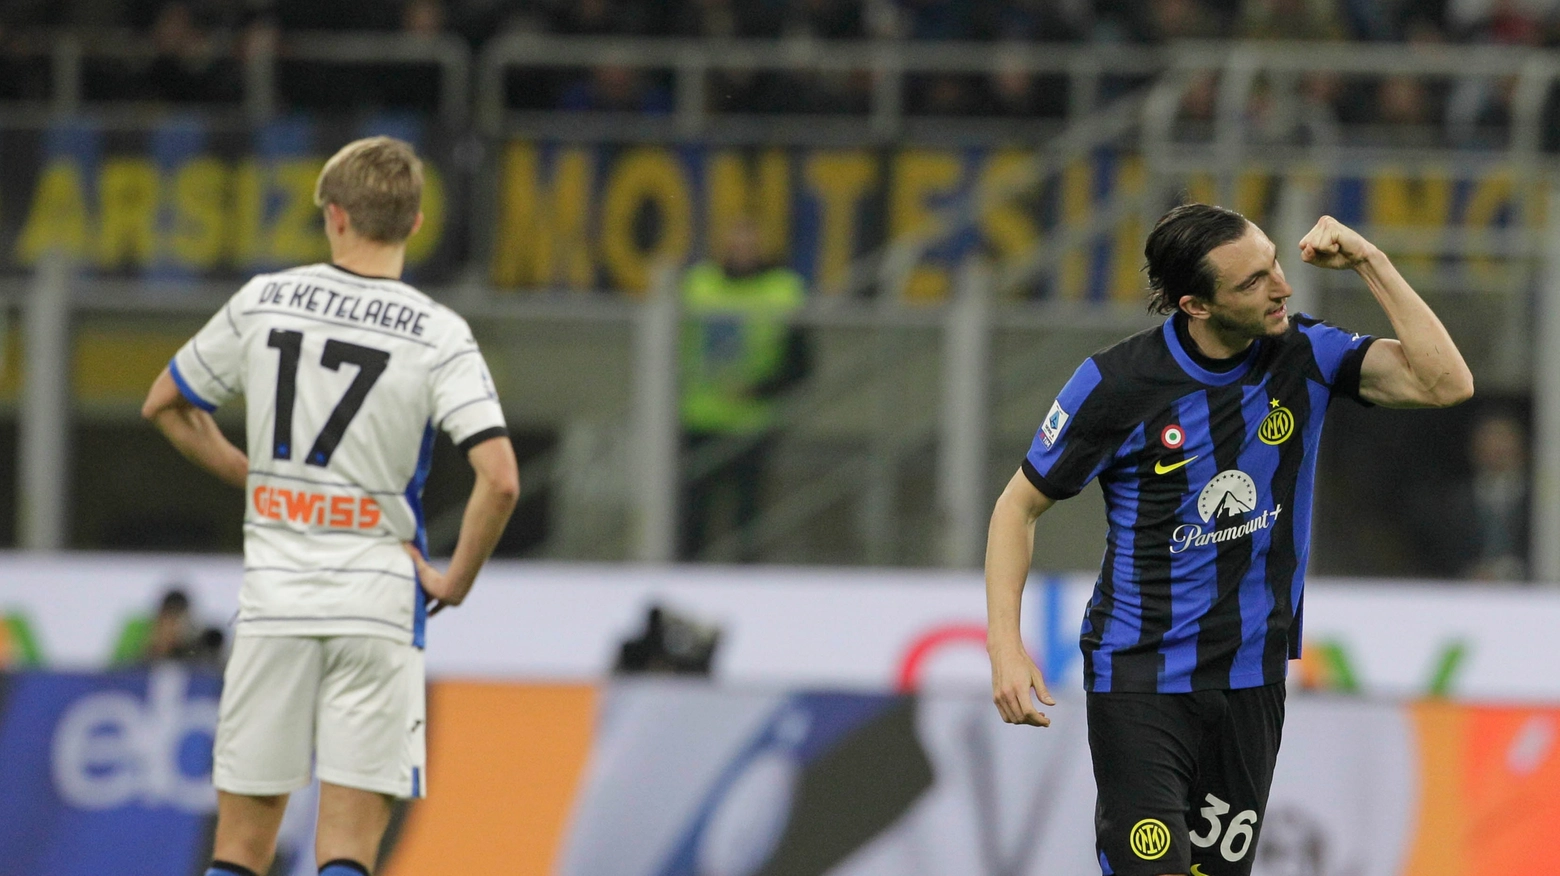 Dea sconfitta 4-0 dall’Inter. Gasperini ha issato bandiera bianca a mezz’ora dalla fine con quattro cambi per risparmiare i titolari